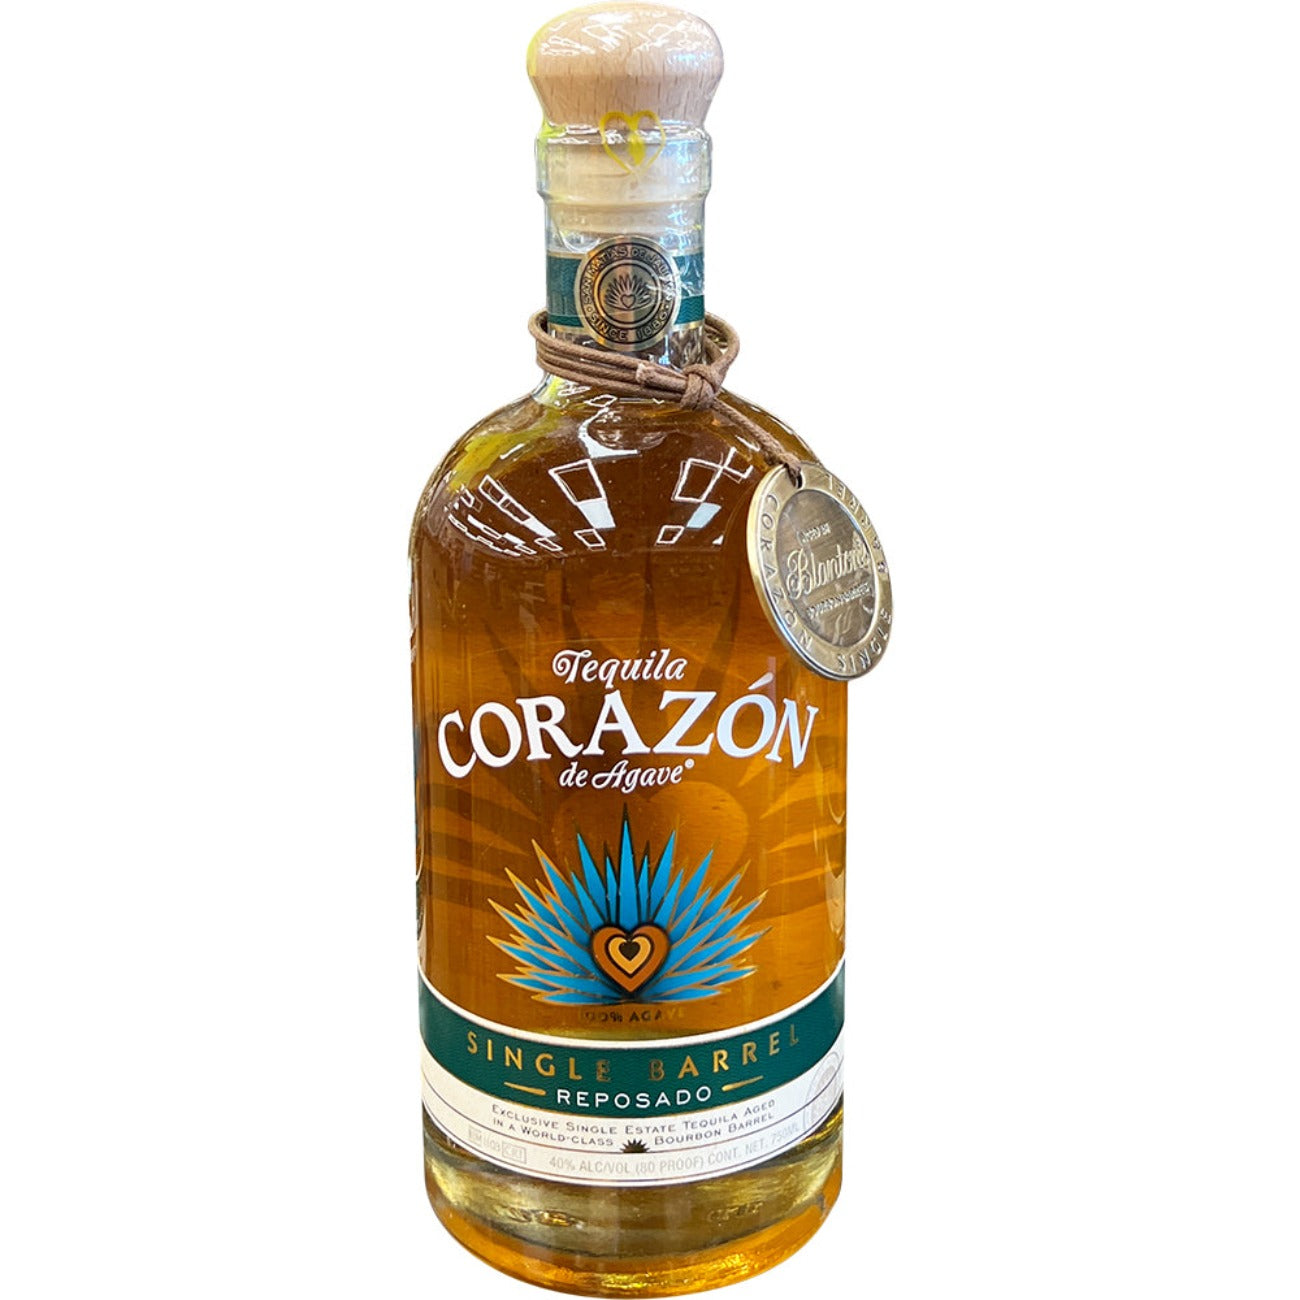 Corazon | Tequila Single Barrel Reposado Blanton’s Barrel Aged